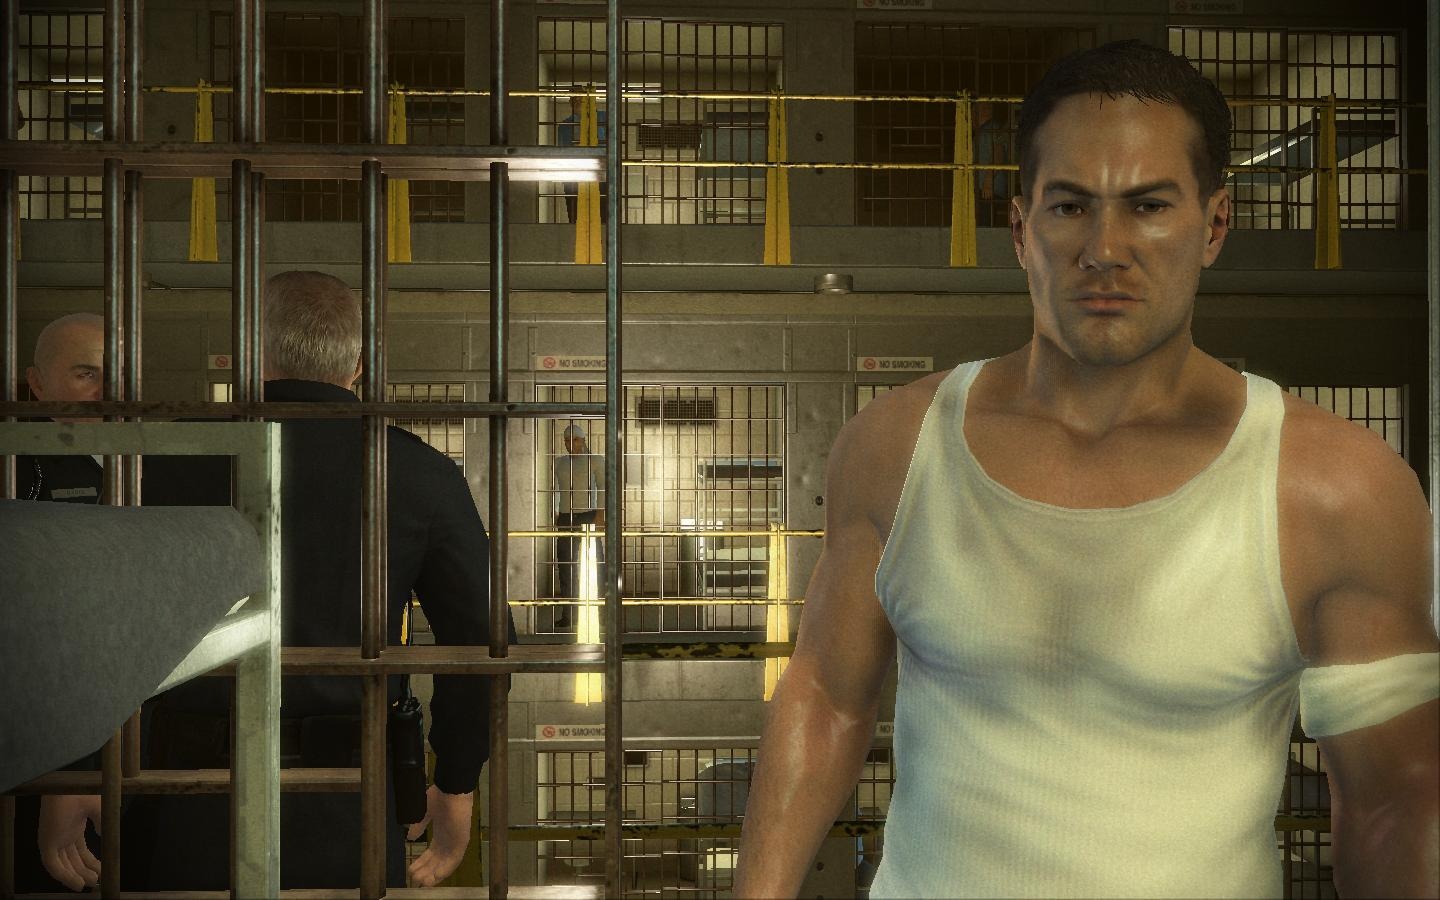 Игра побег. Prison Break игра. Prison Break: the Conspiracy (2010). Побег теория заговора. Присон брейк игра.